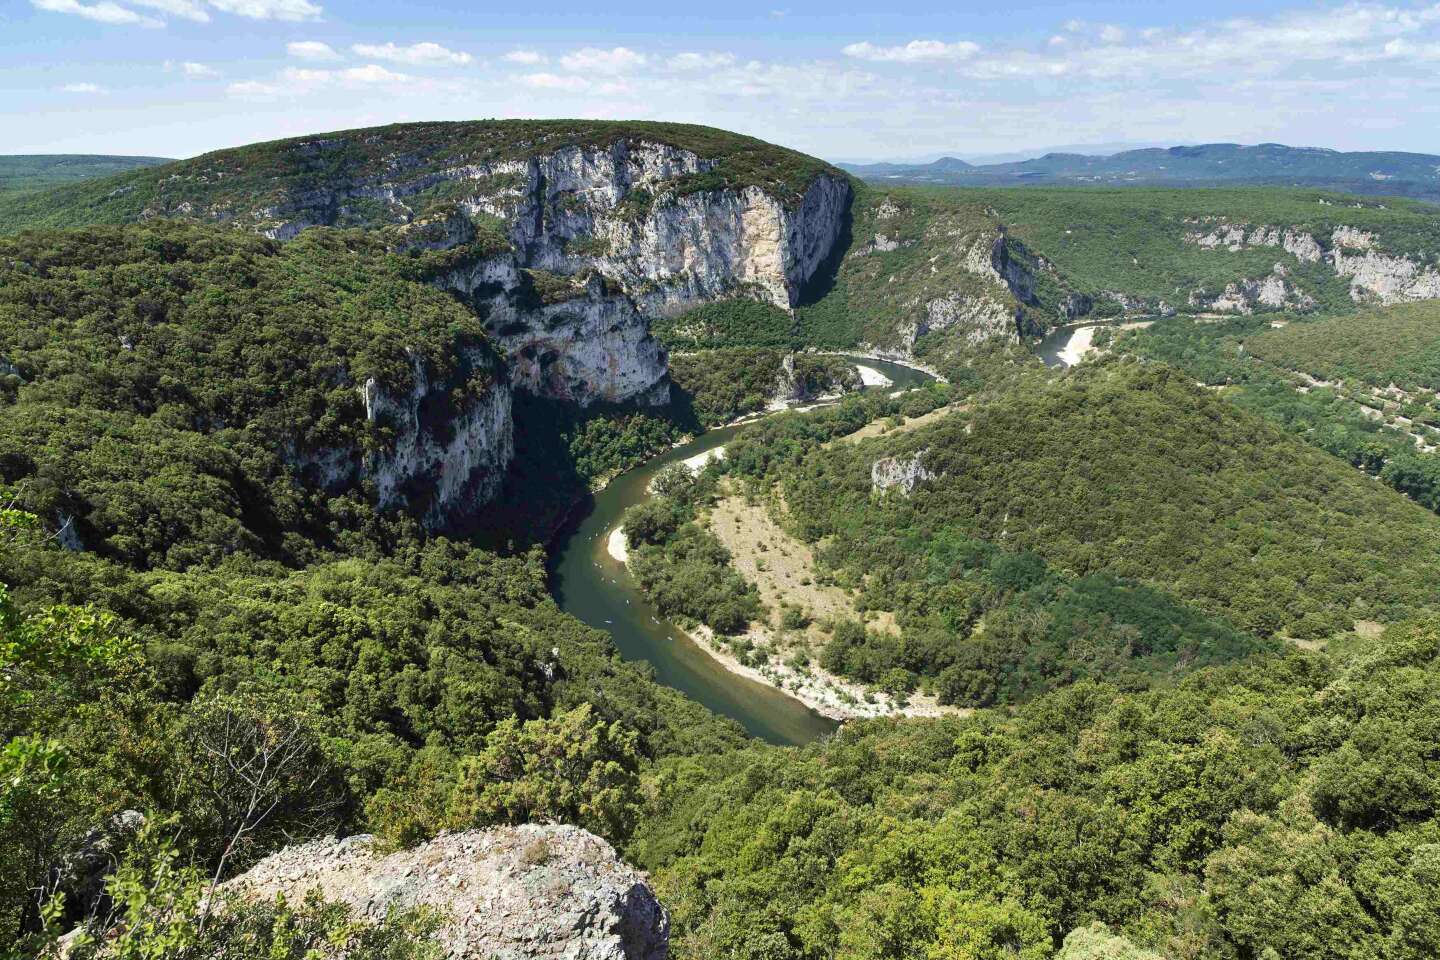 En Auvergne-Rhône-Alpes, la chambre régionale des comptes prône la simplification de la gouvernance des parcs naturels